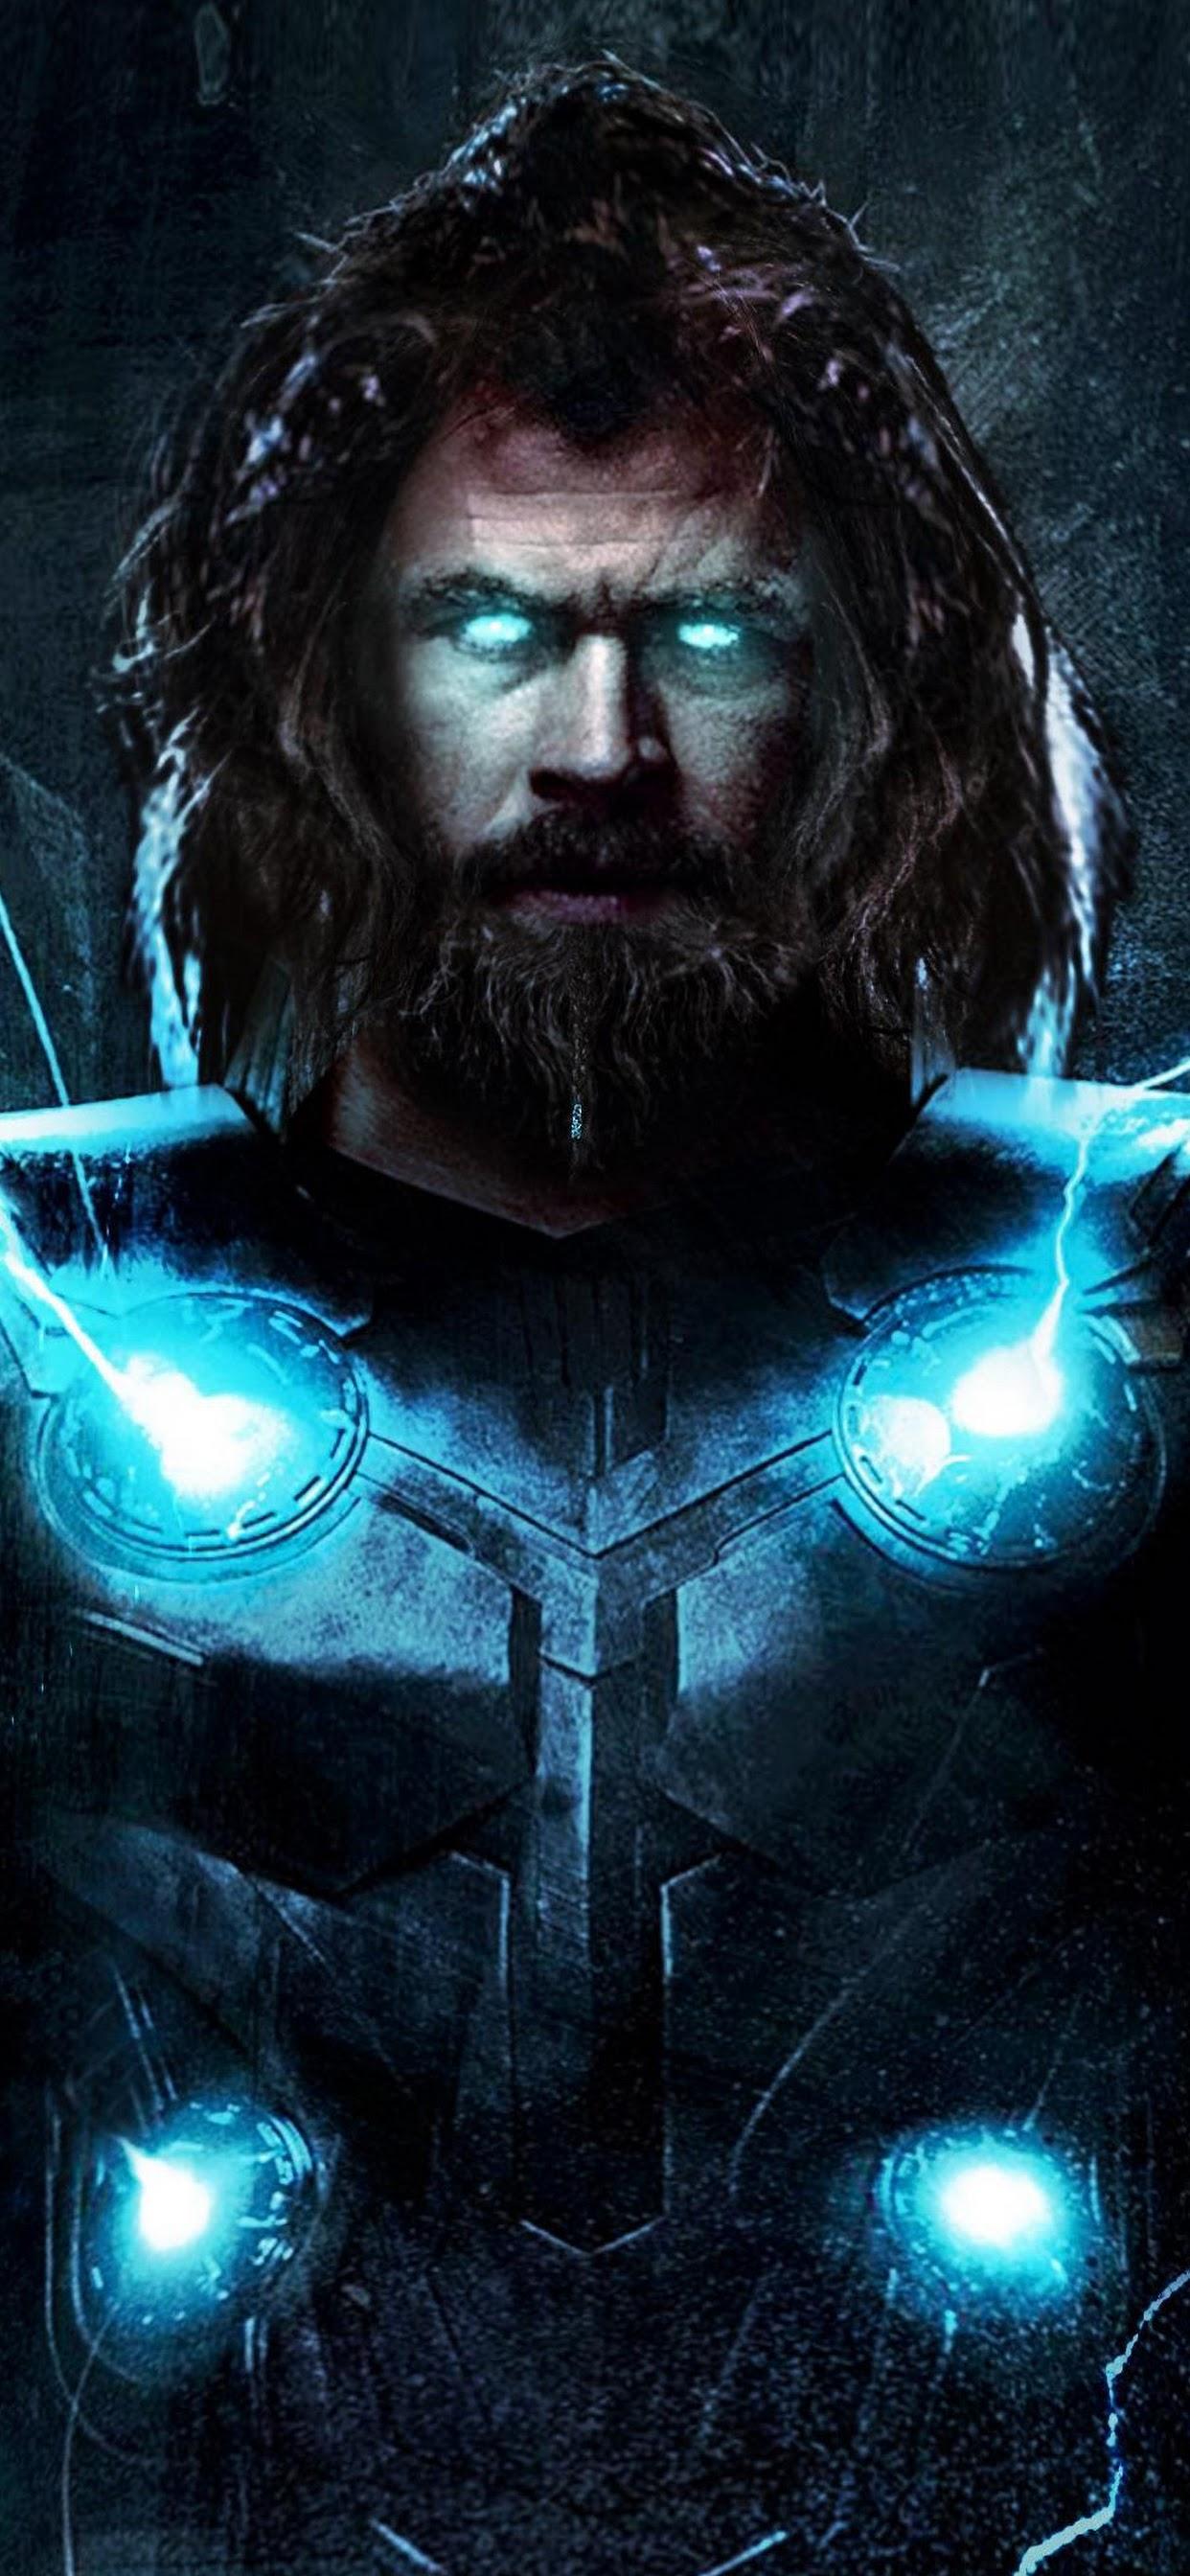 Avengers: Endgame Thor Stormbreaker 4K Wallpaper